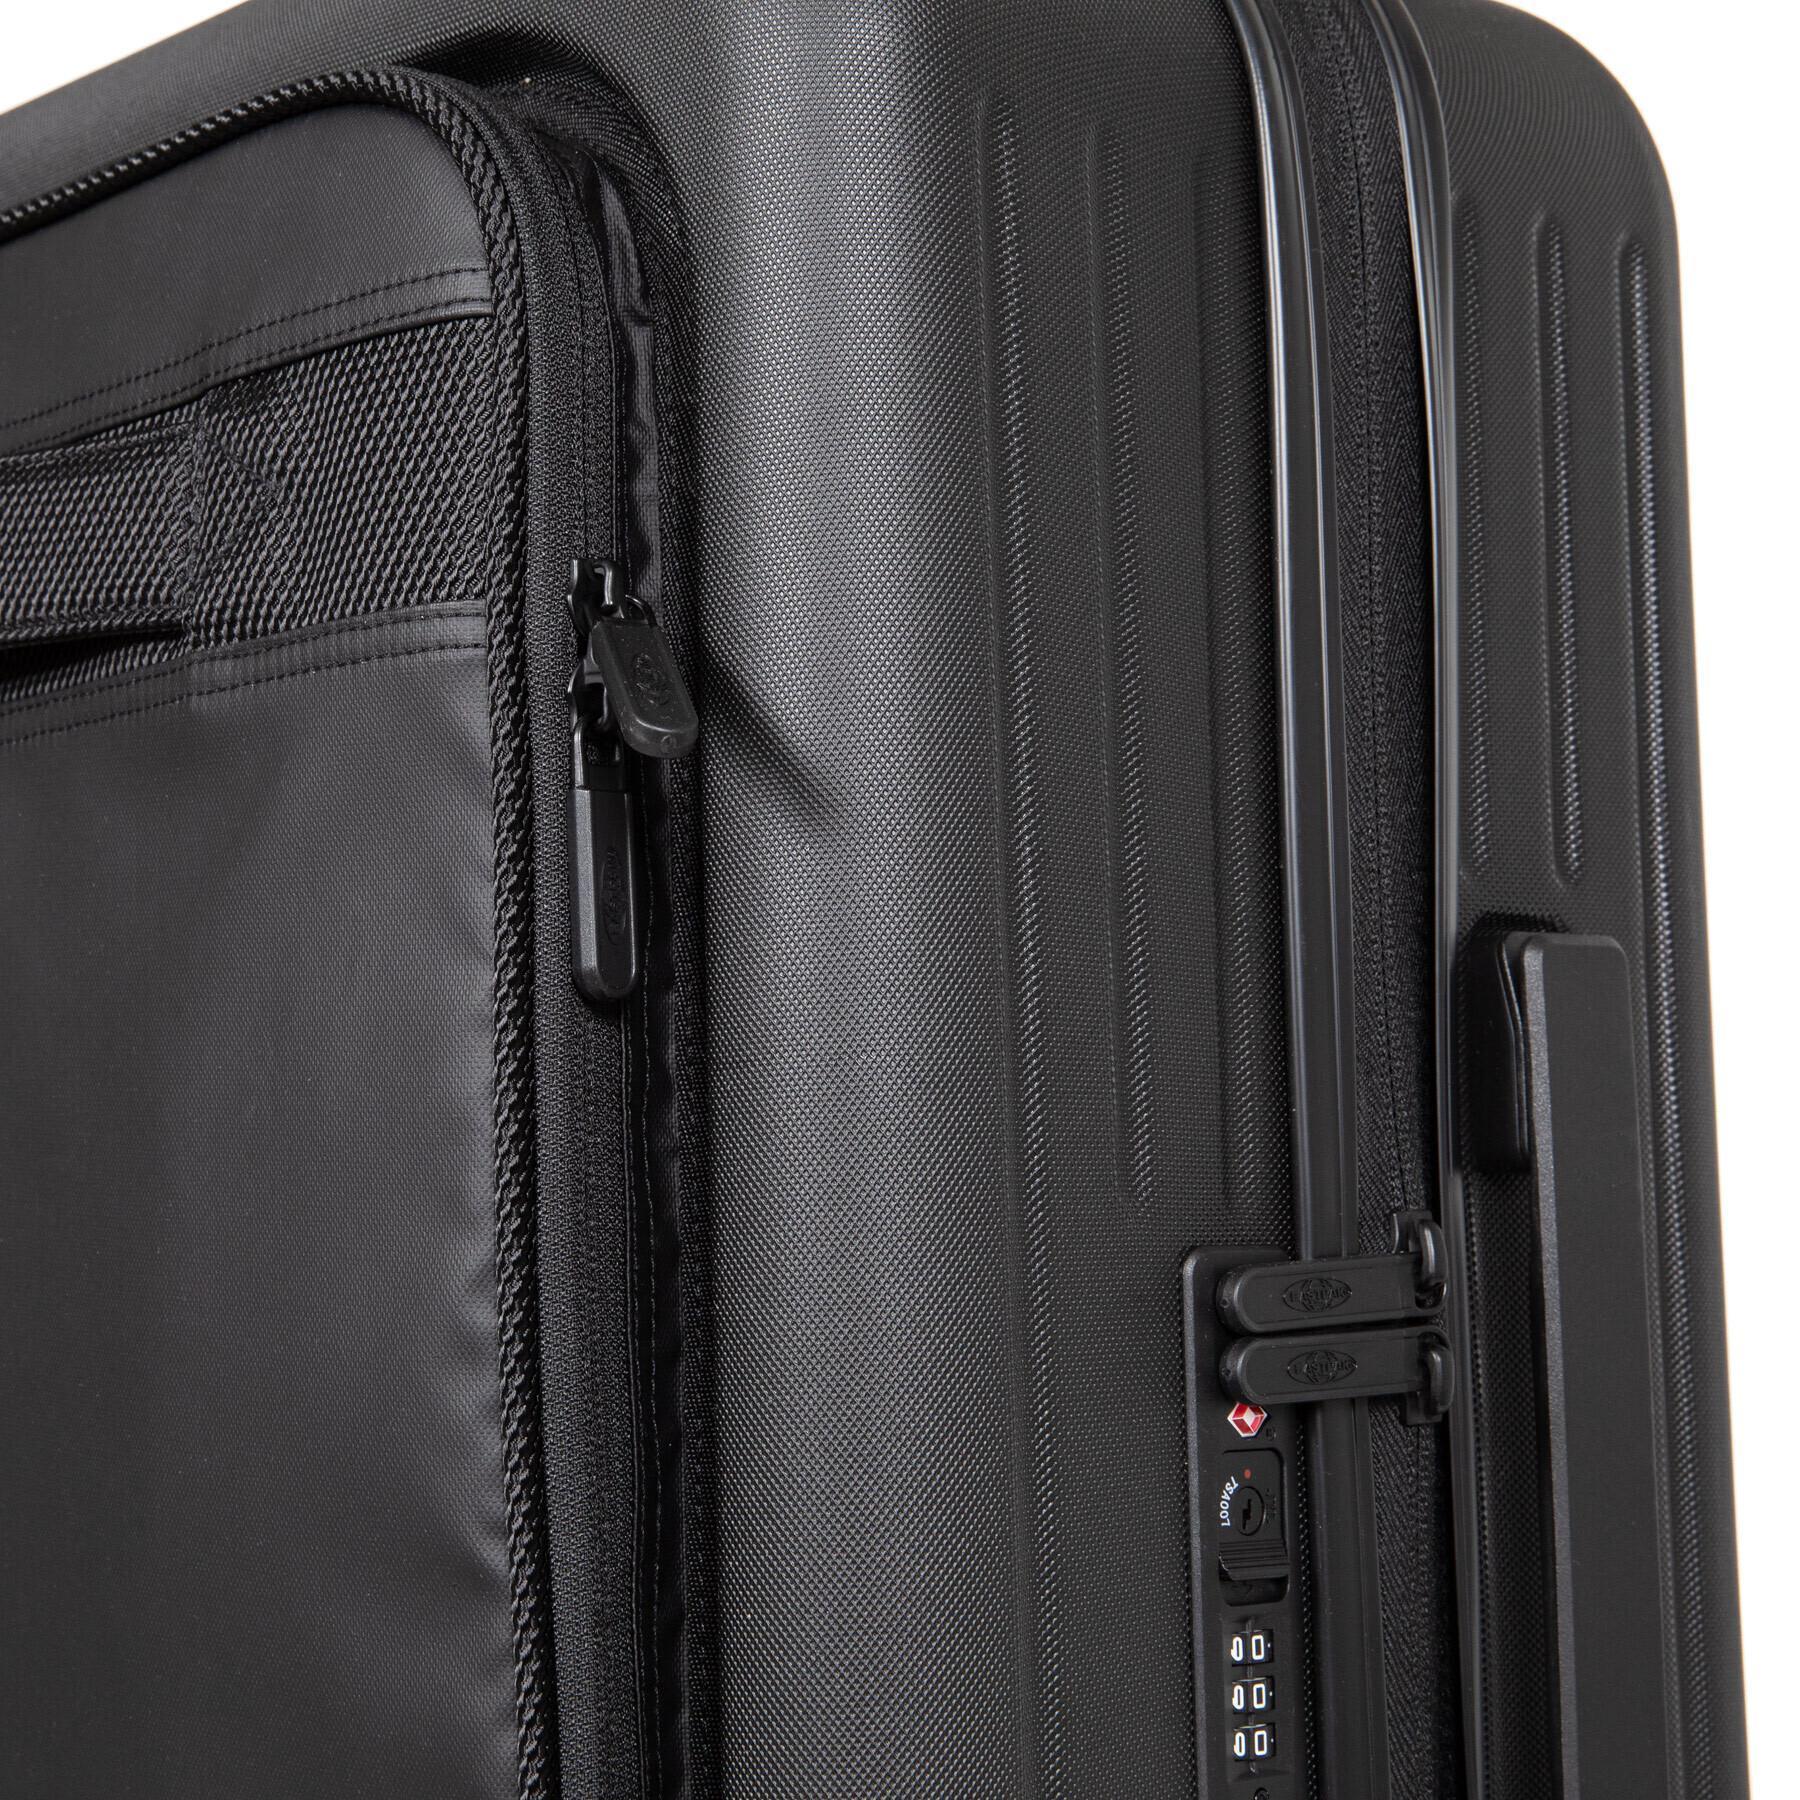 Suitcase Eastpak Case M